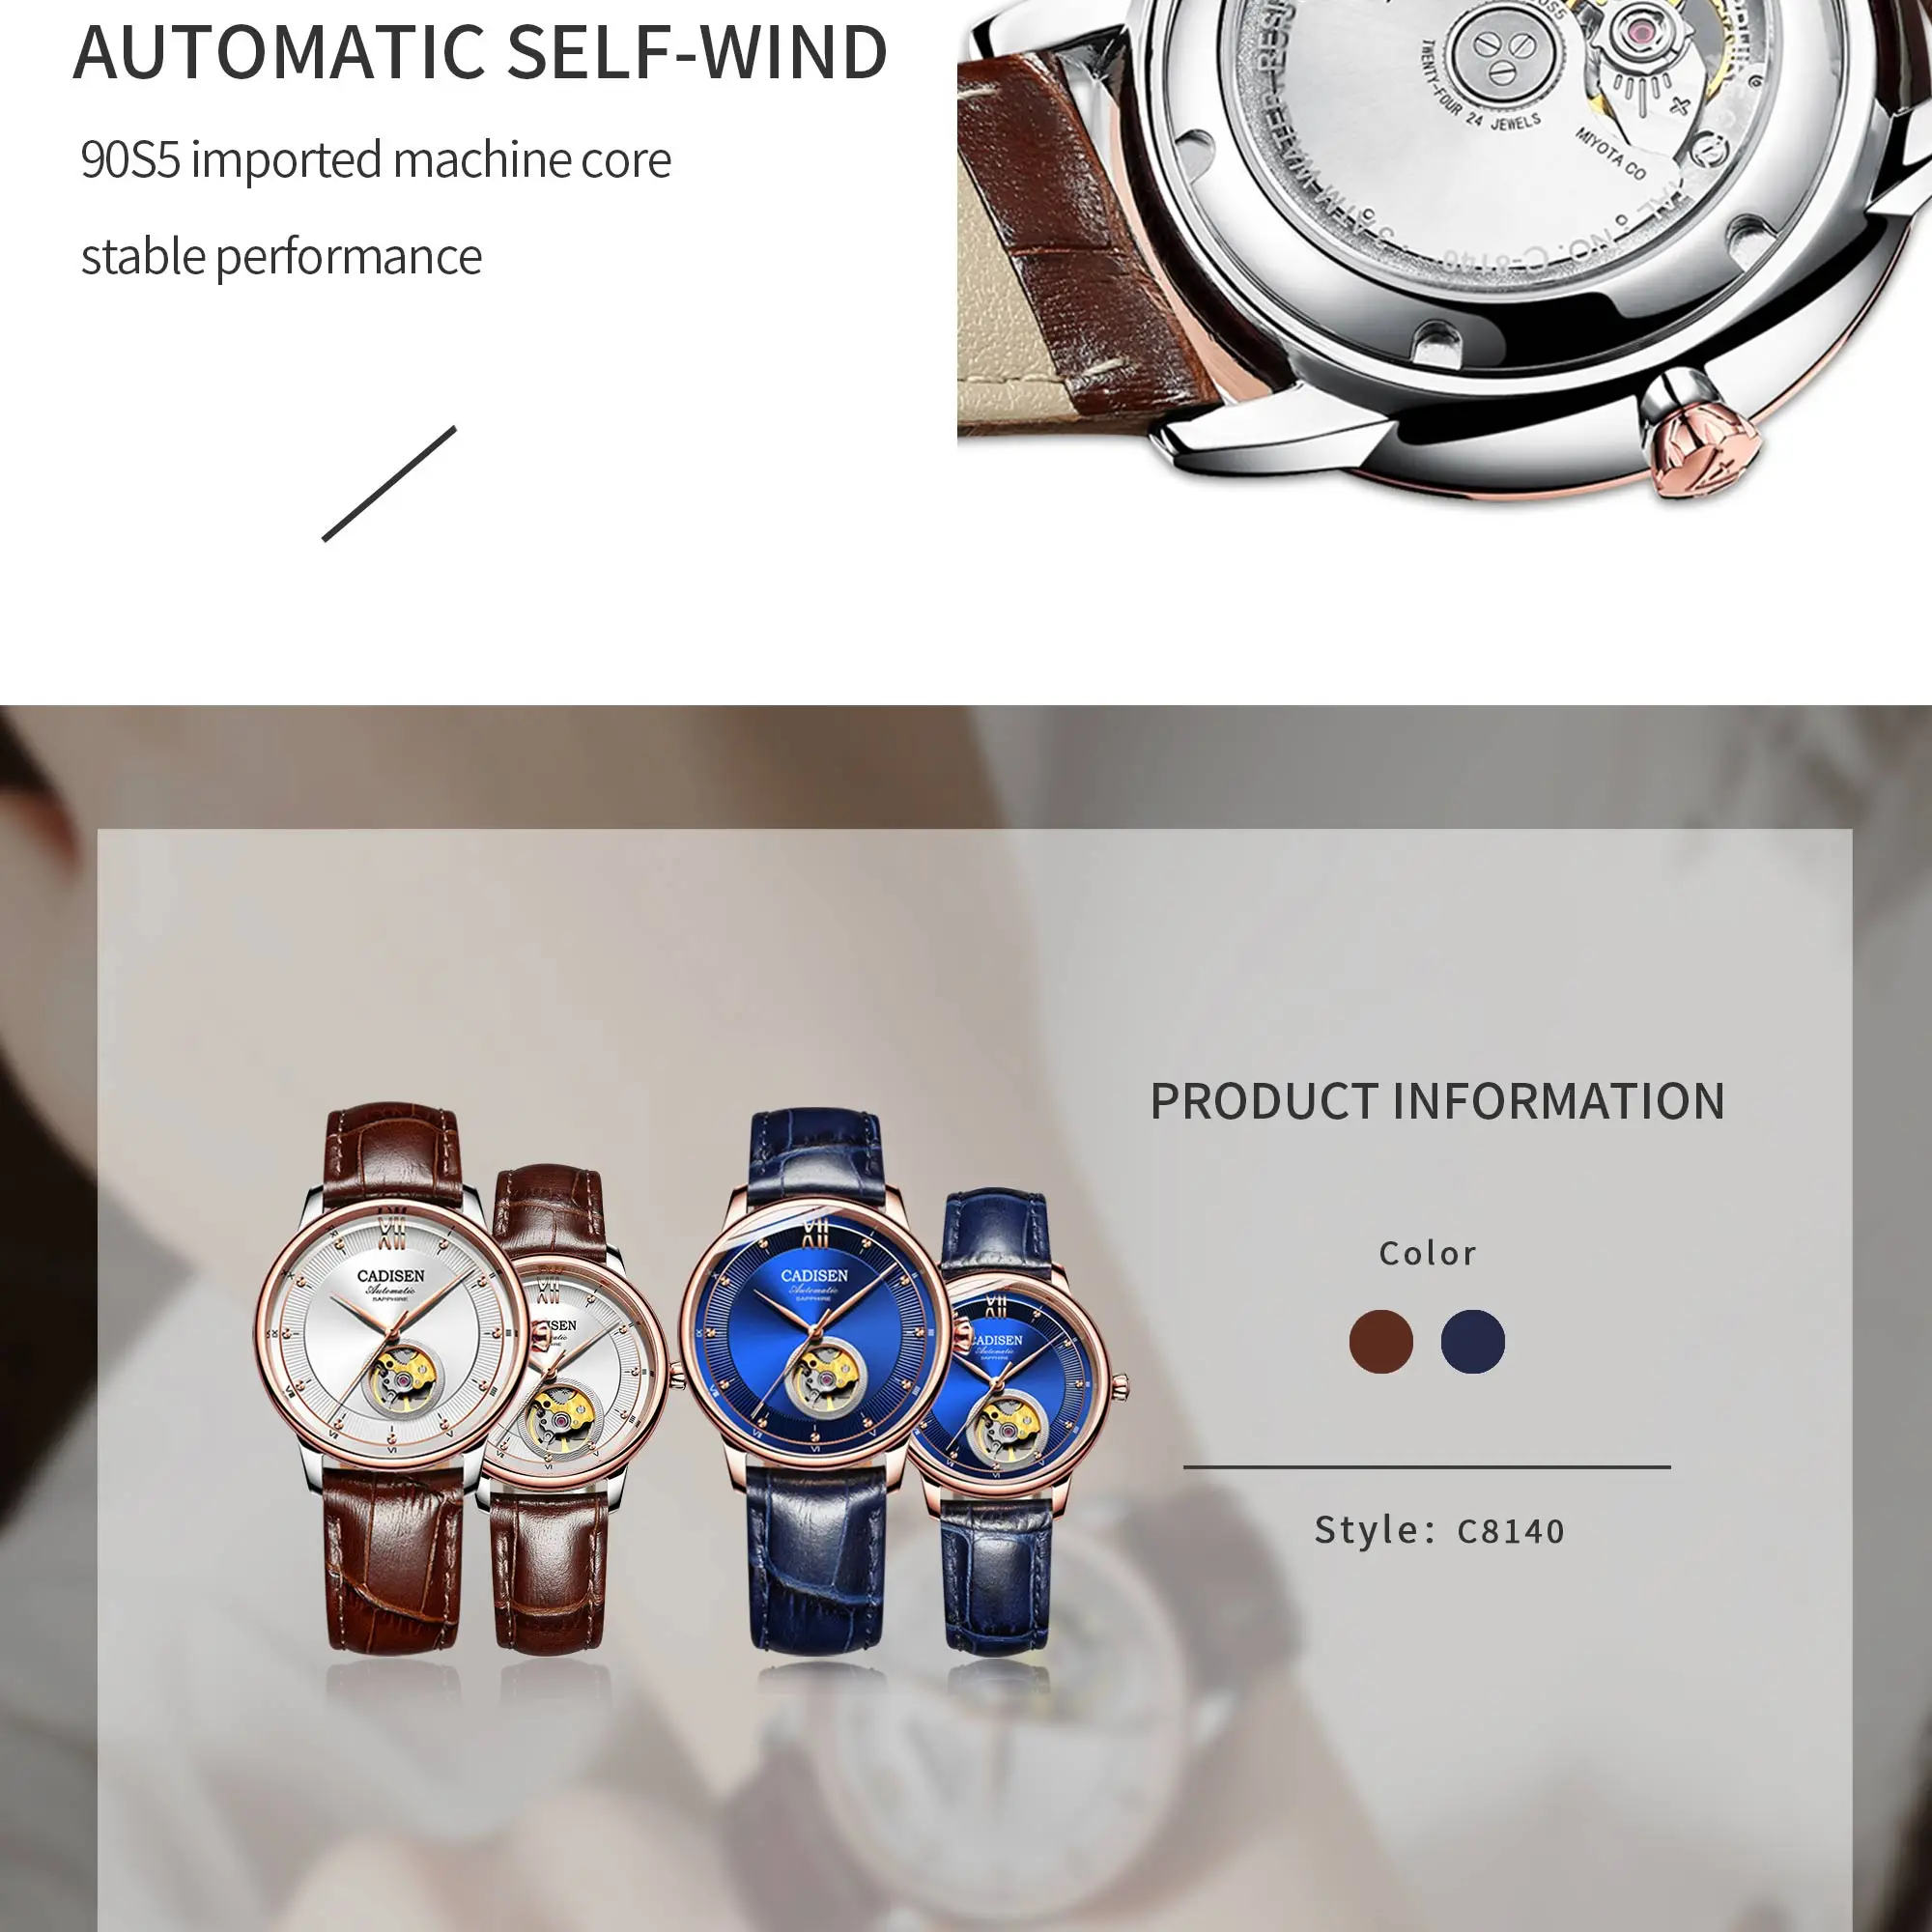 CADISEN мужские часы Топ бренд класса люкс автоматические часы пара механические Женские для влюбленных часы MIYOTA 90S5 ультра-тонкие часы